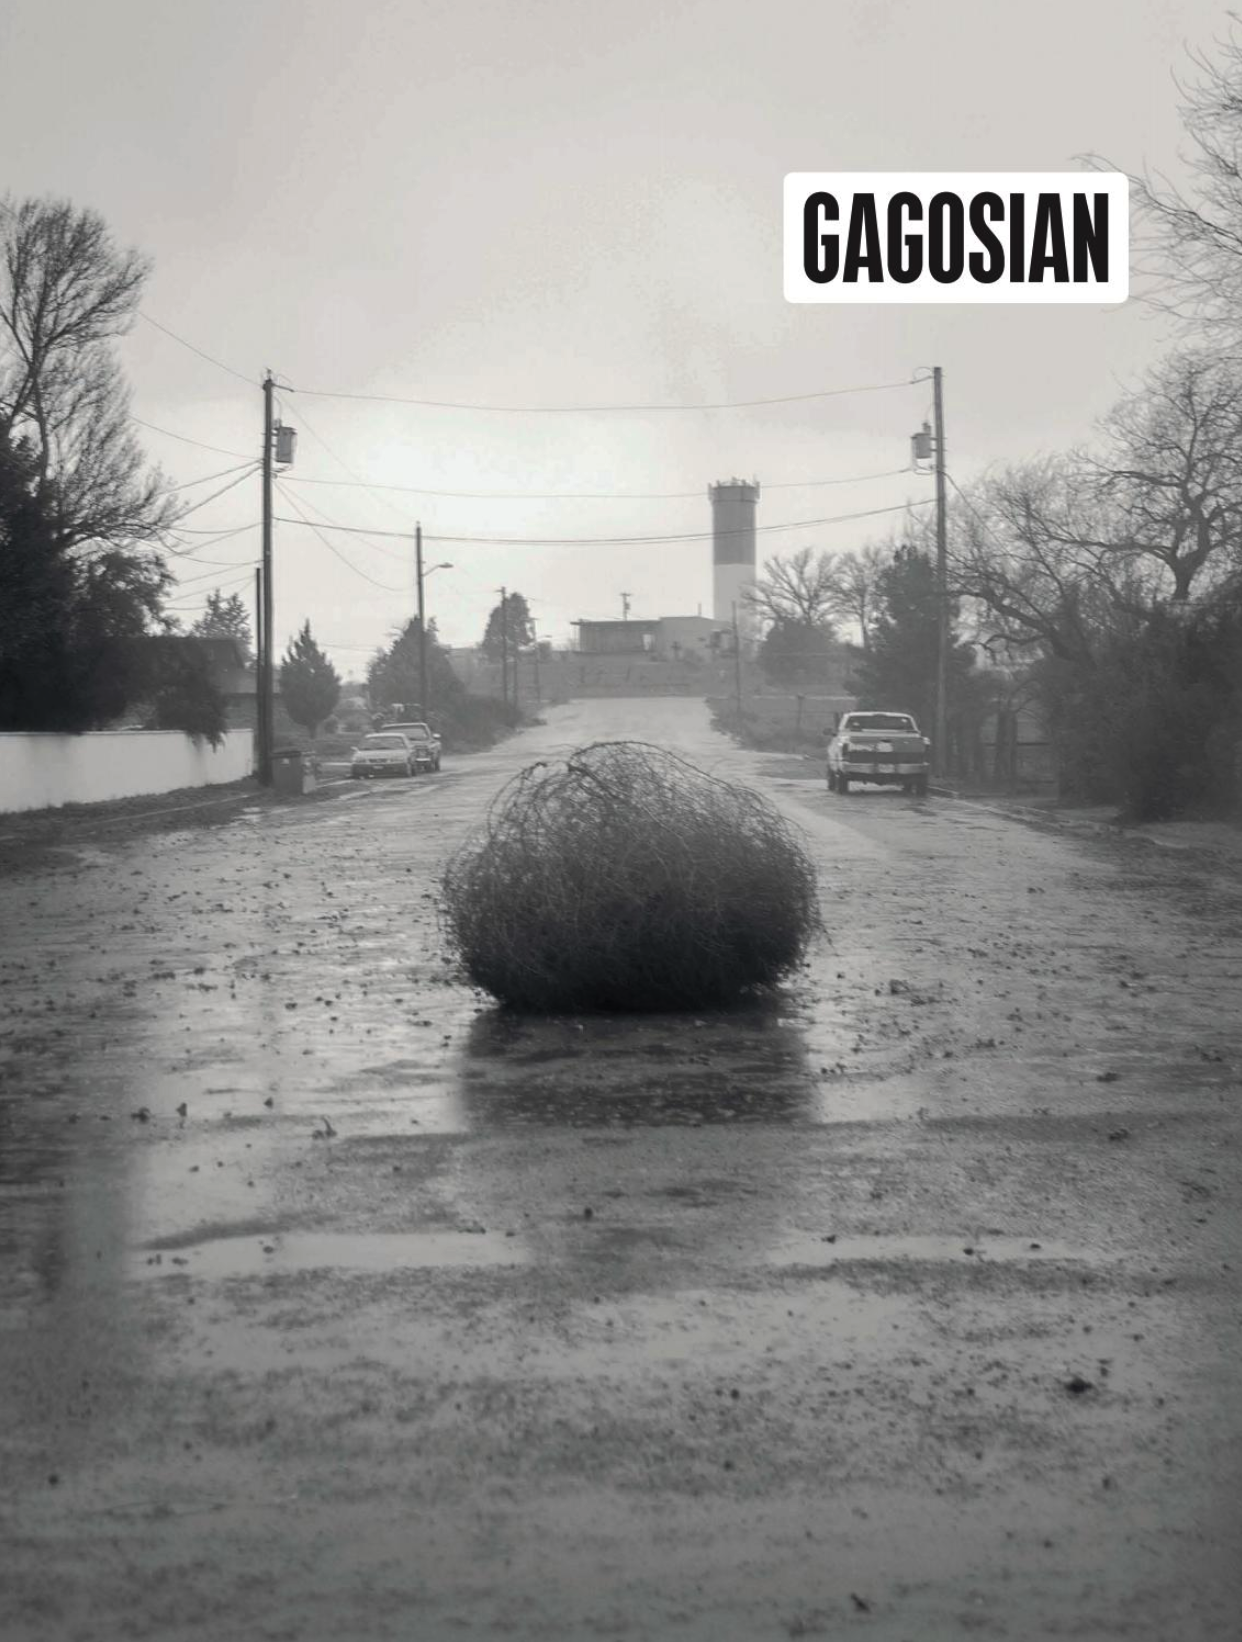 Gagosian Quarterly: RUDOLF POLANSZKY in conversation with Hans Ulrich Obrist